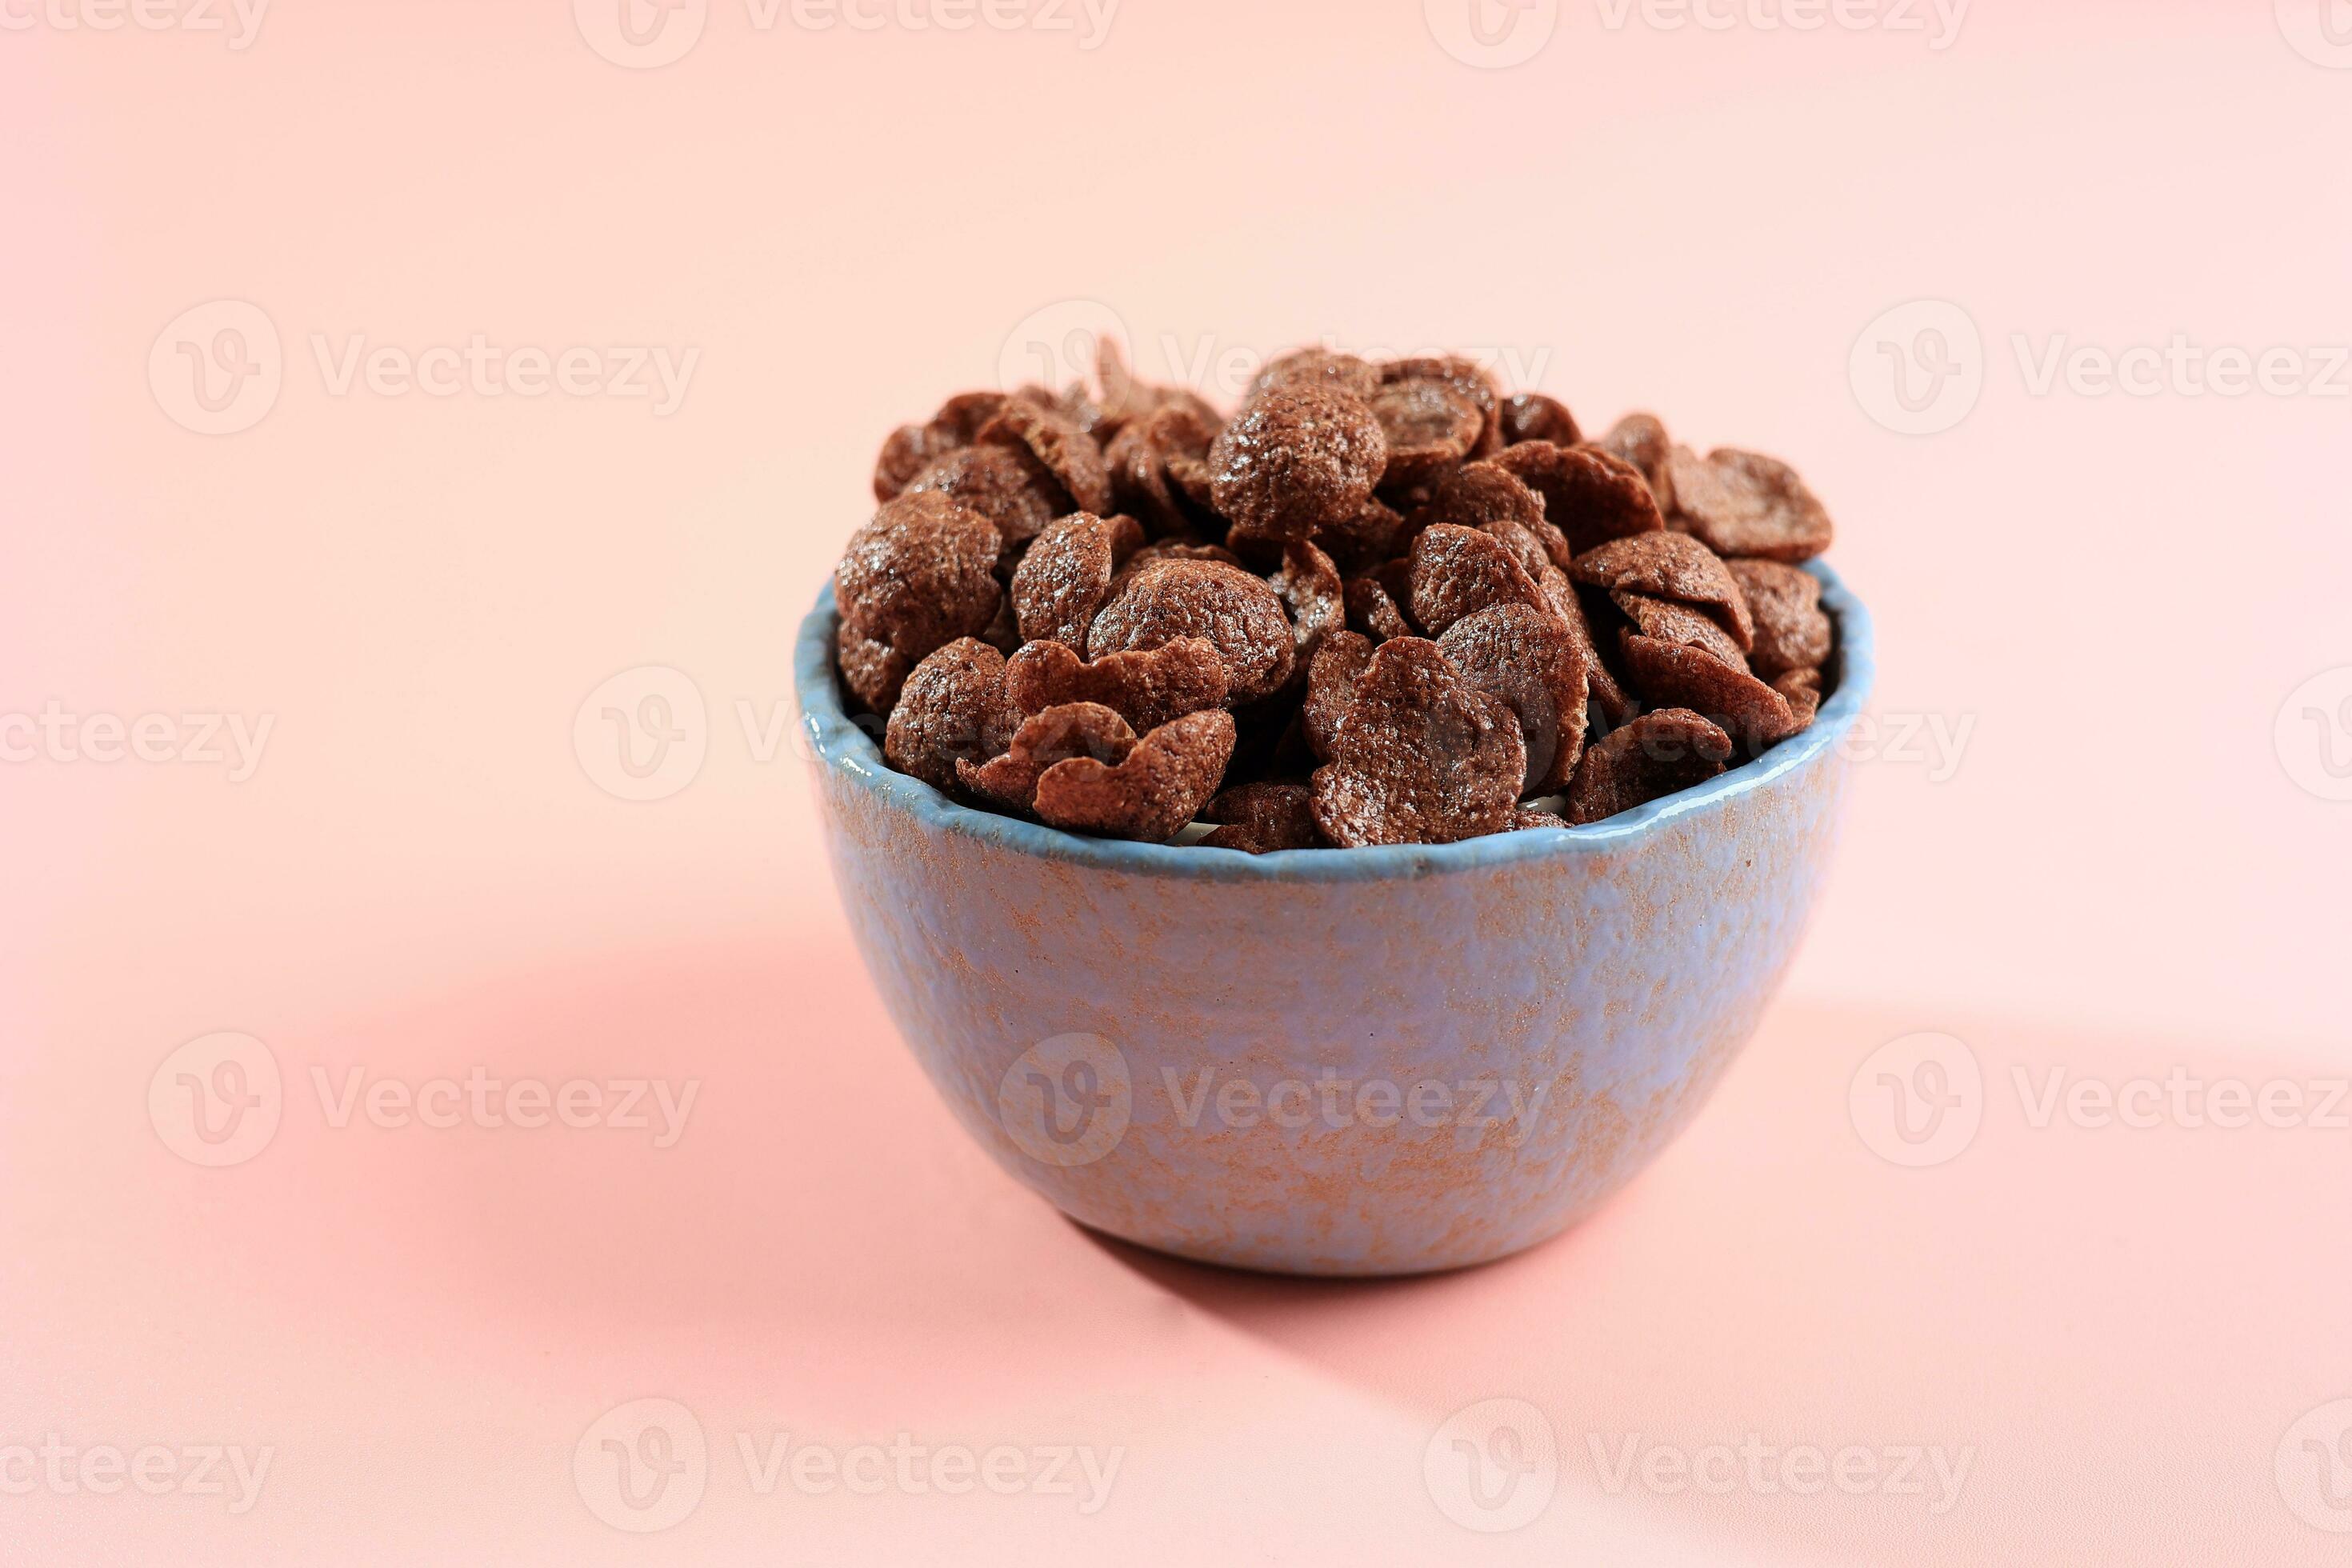 https://static.vecteezy.com/ti/photos-gratuite/p2/26707676-une-bol-de-cereale-avec-chocolat-saveur-pour-les-enfants-petit-dejeuner-photo.jpg